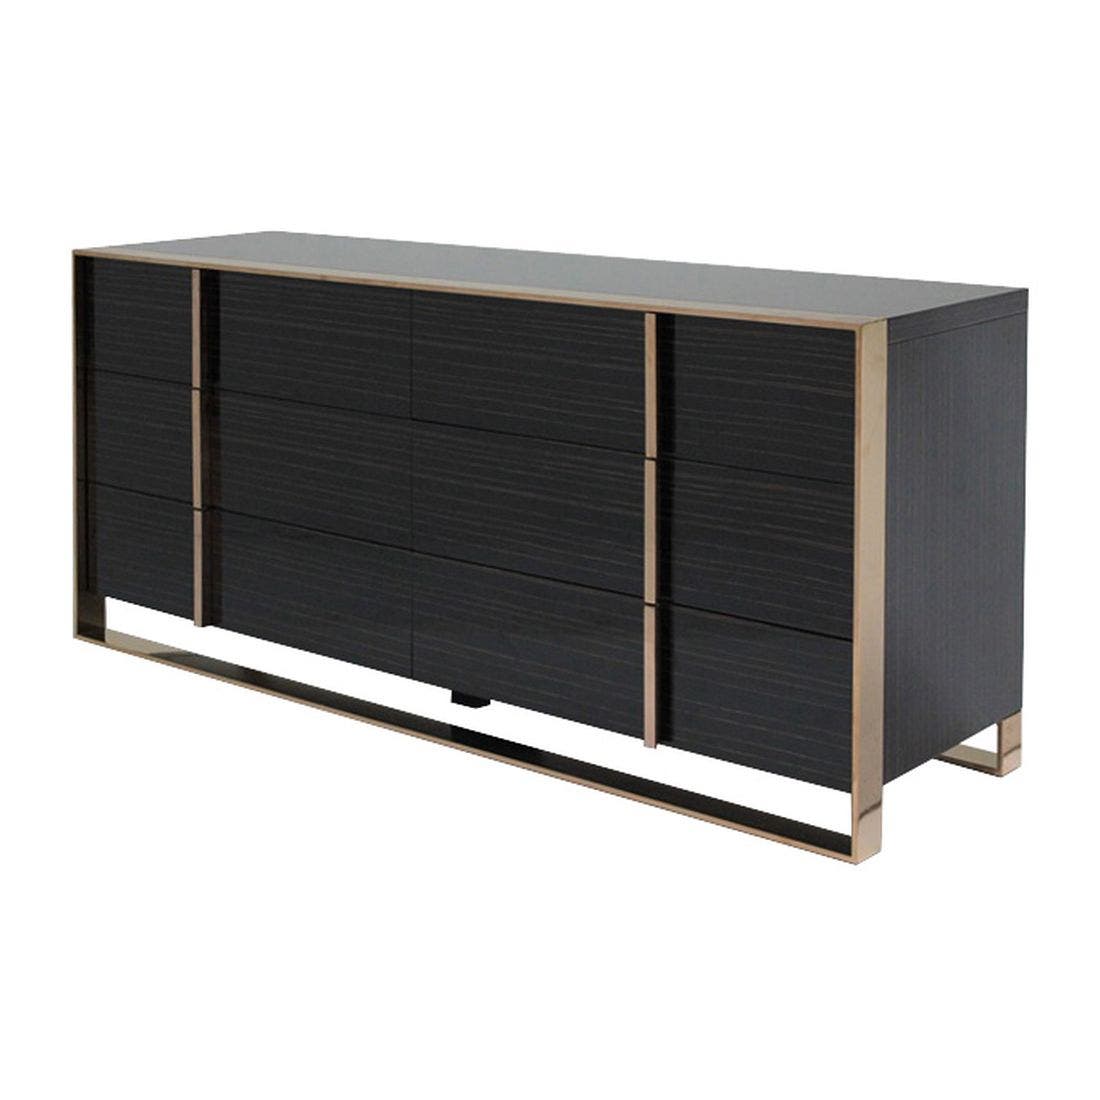 19204453-liora-furniture-storage-organization-storage-furniture-01